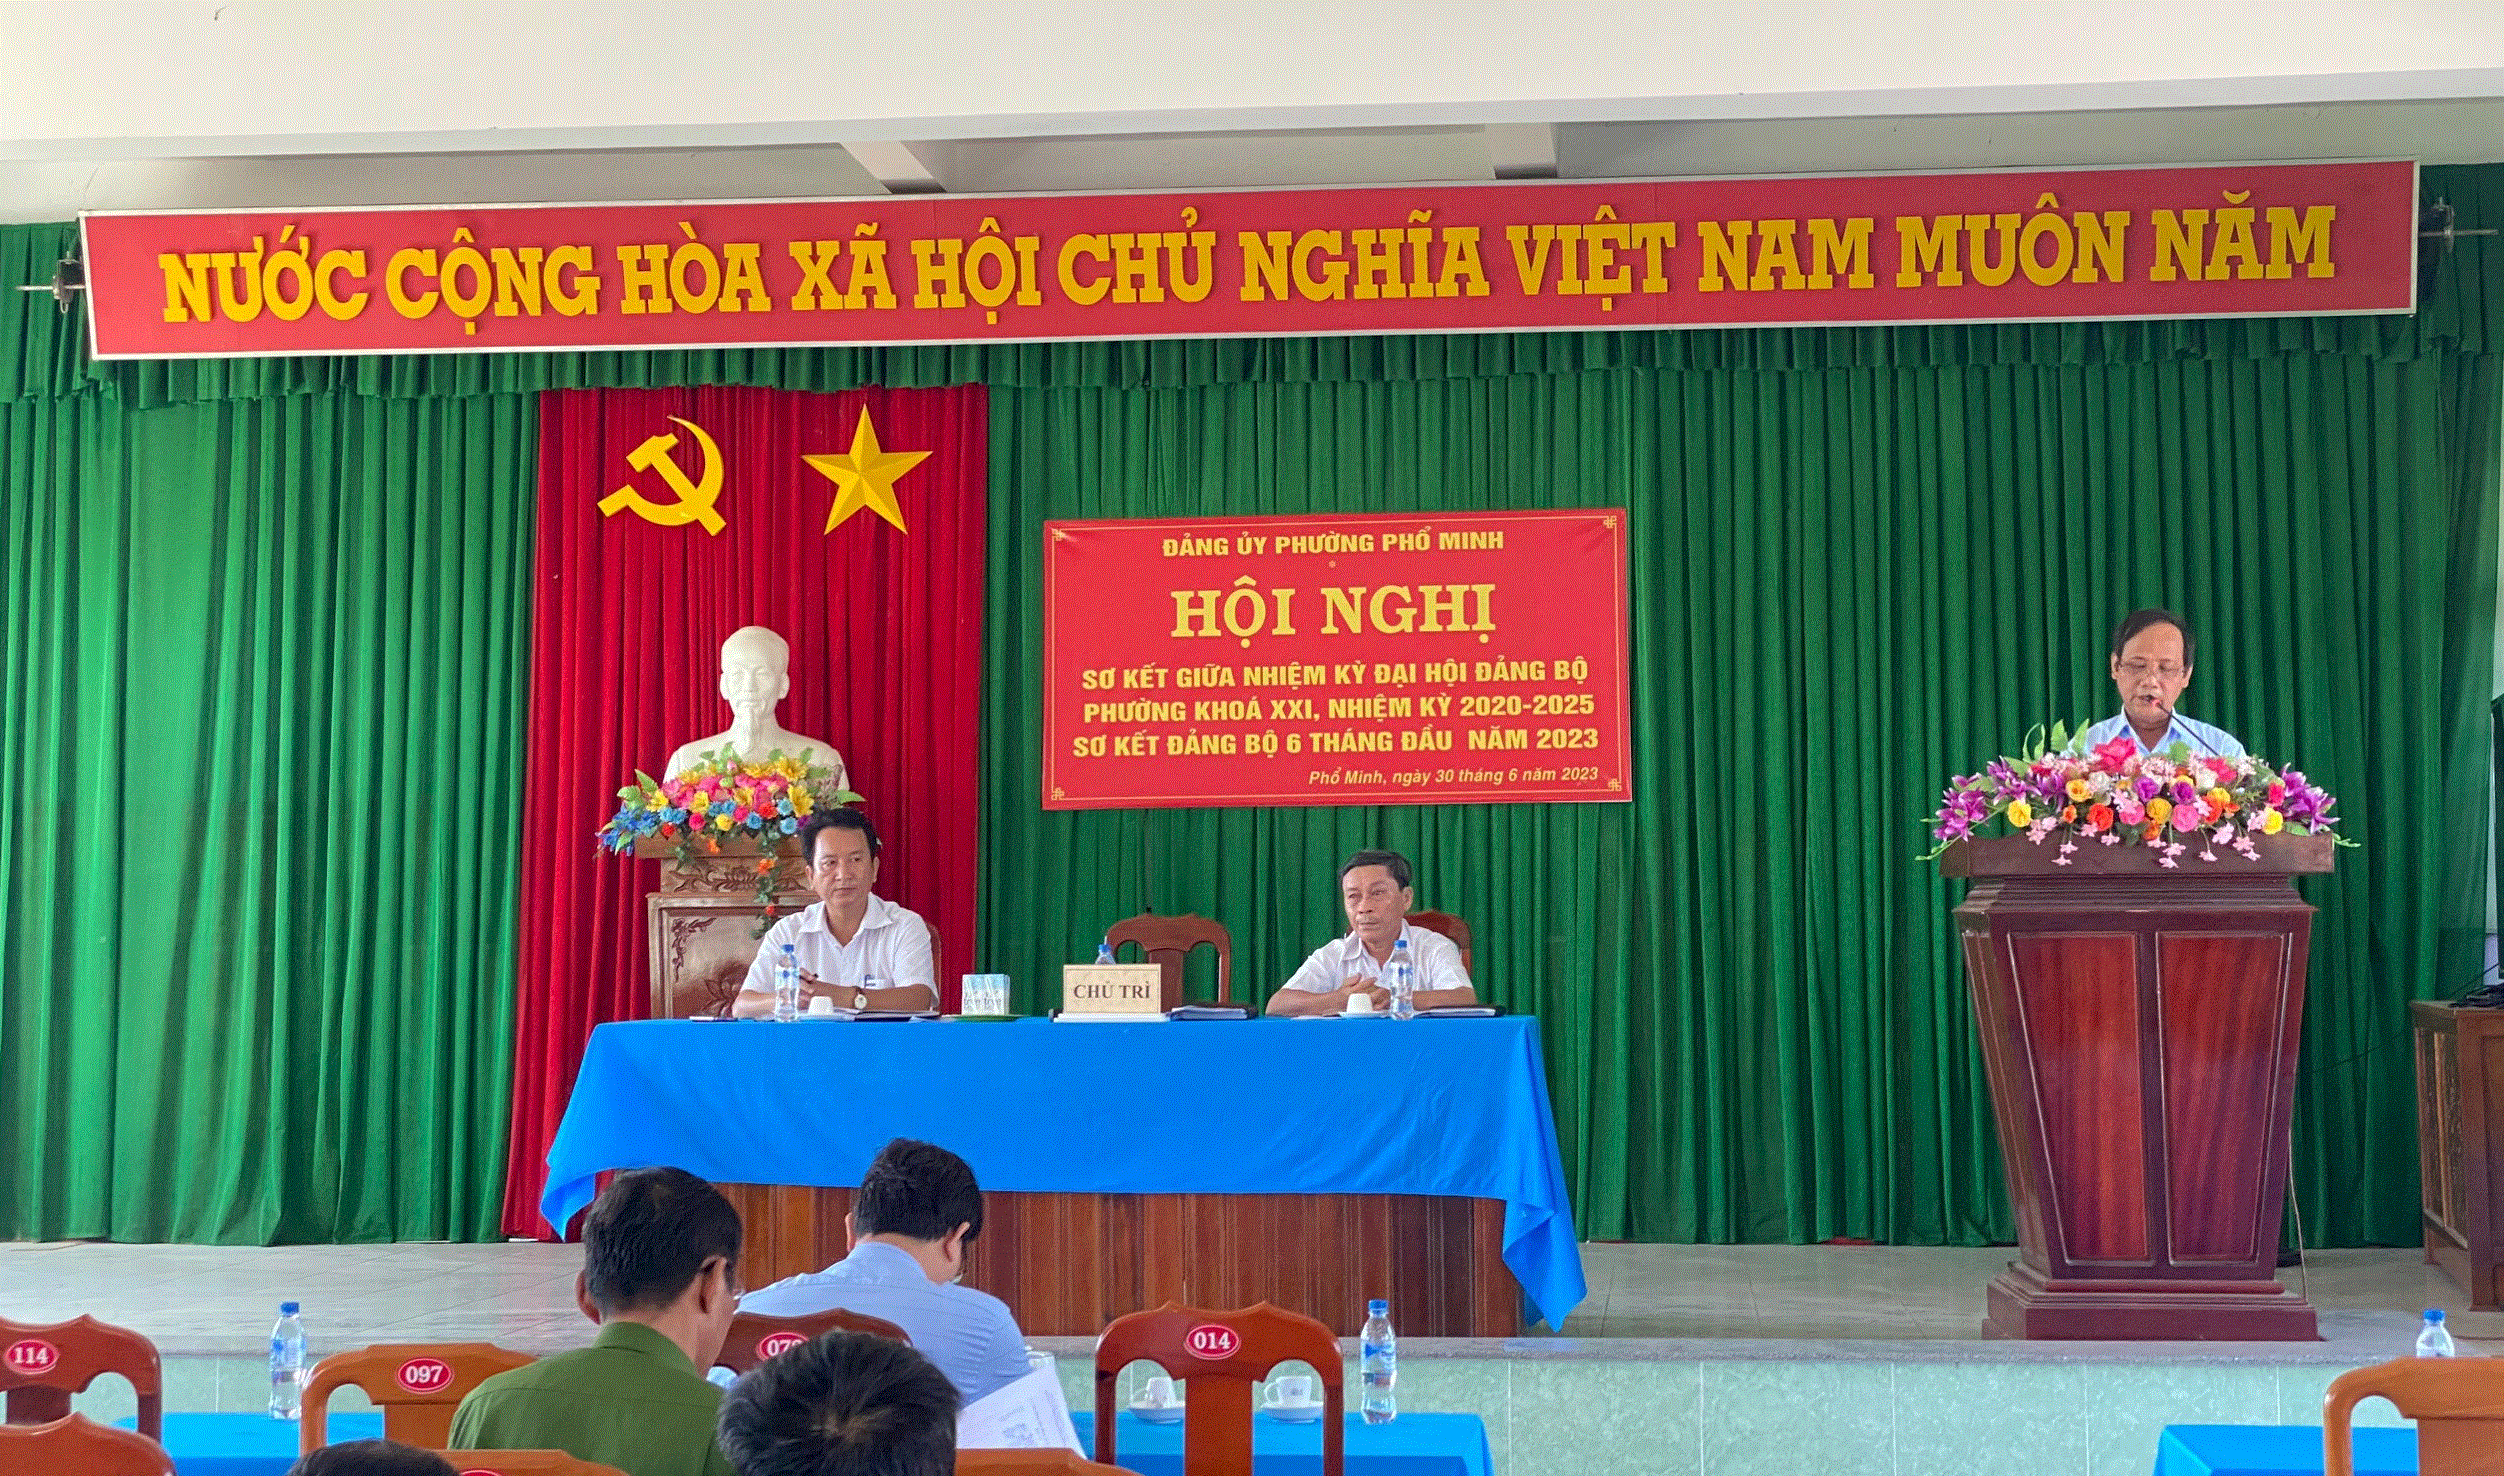 Đảng bộ phường Phổ Minh tổ chức Hội nghị sơ kết công tác Đảng bộ